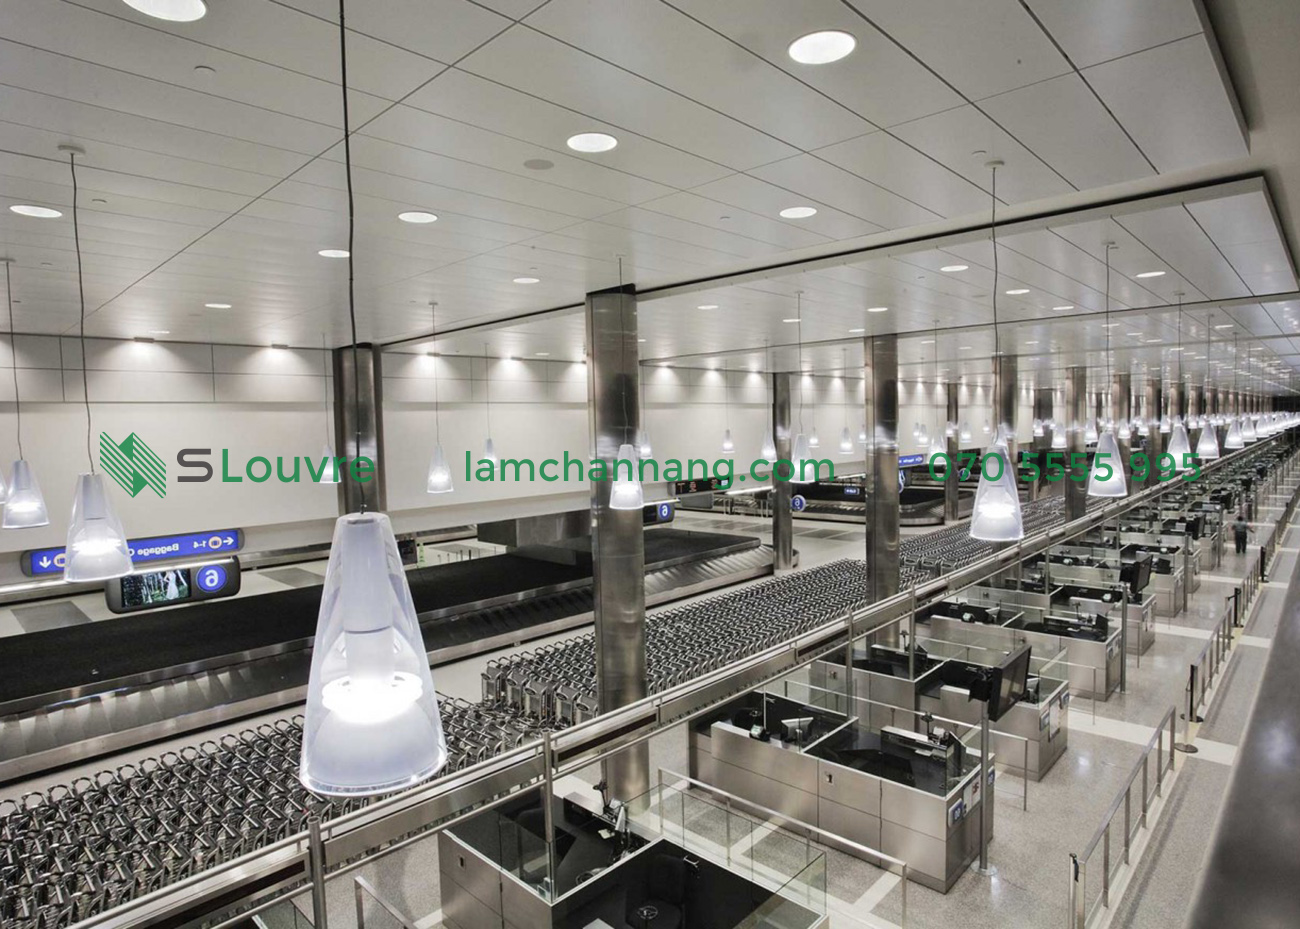 tran-nhom-san-bay-airport-aluminium-ceiling-20